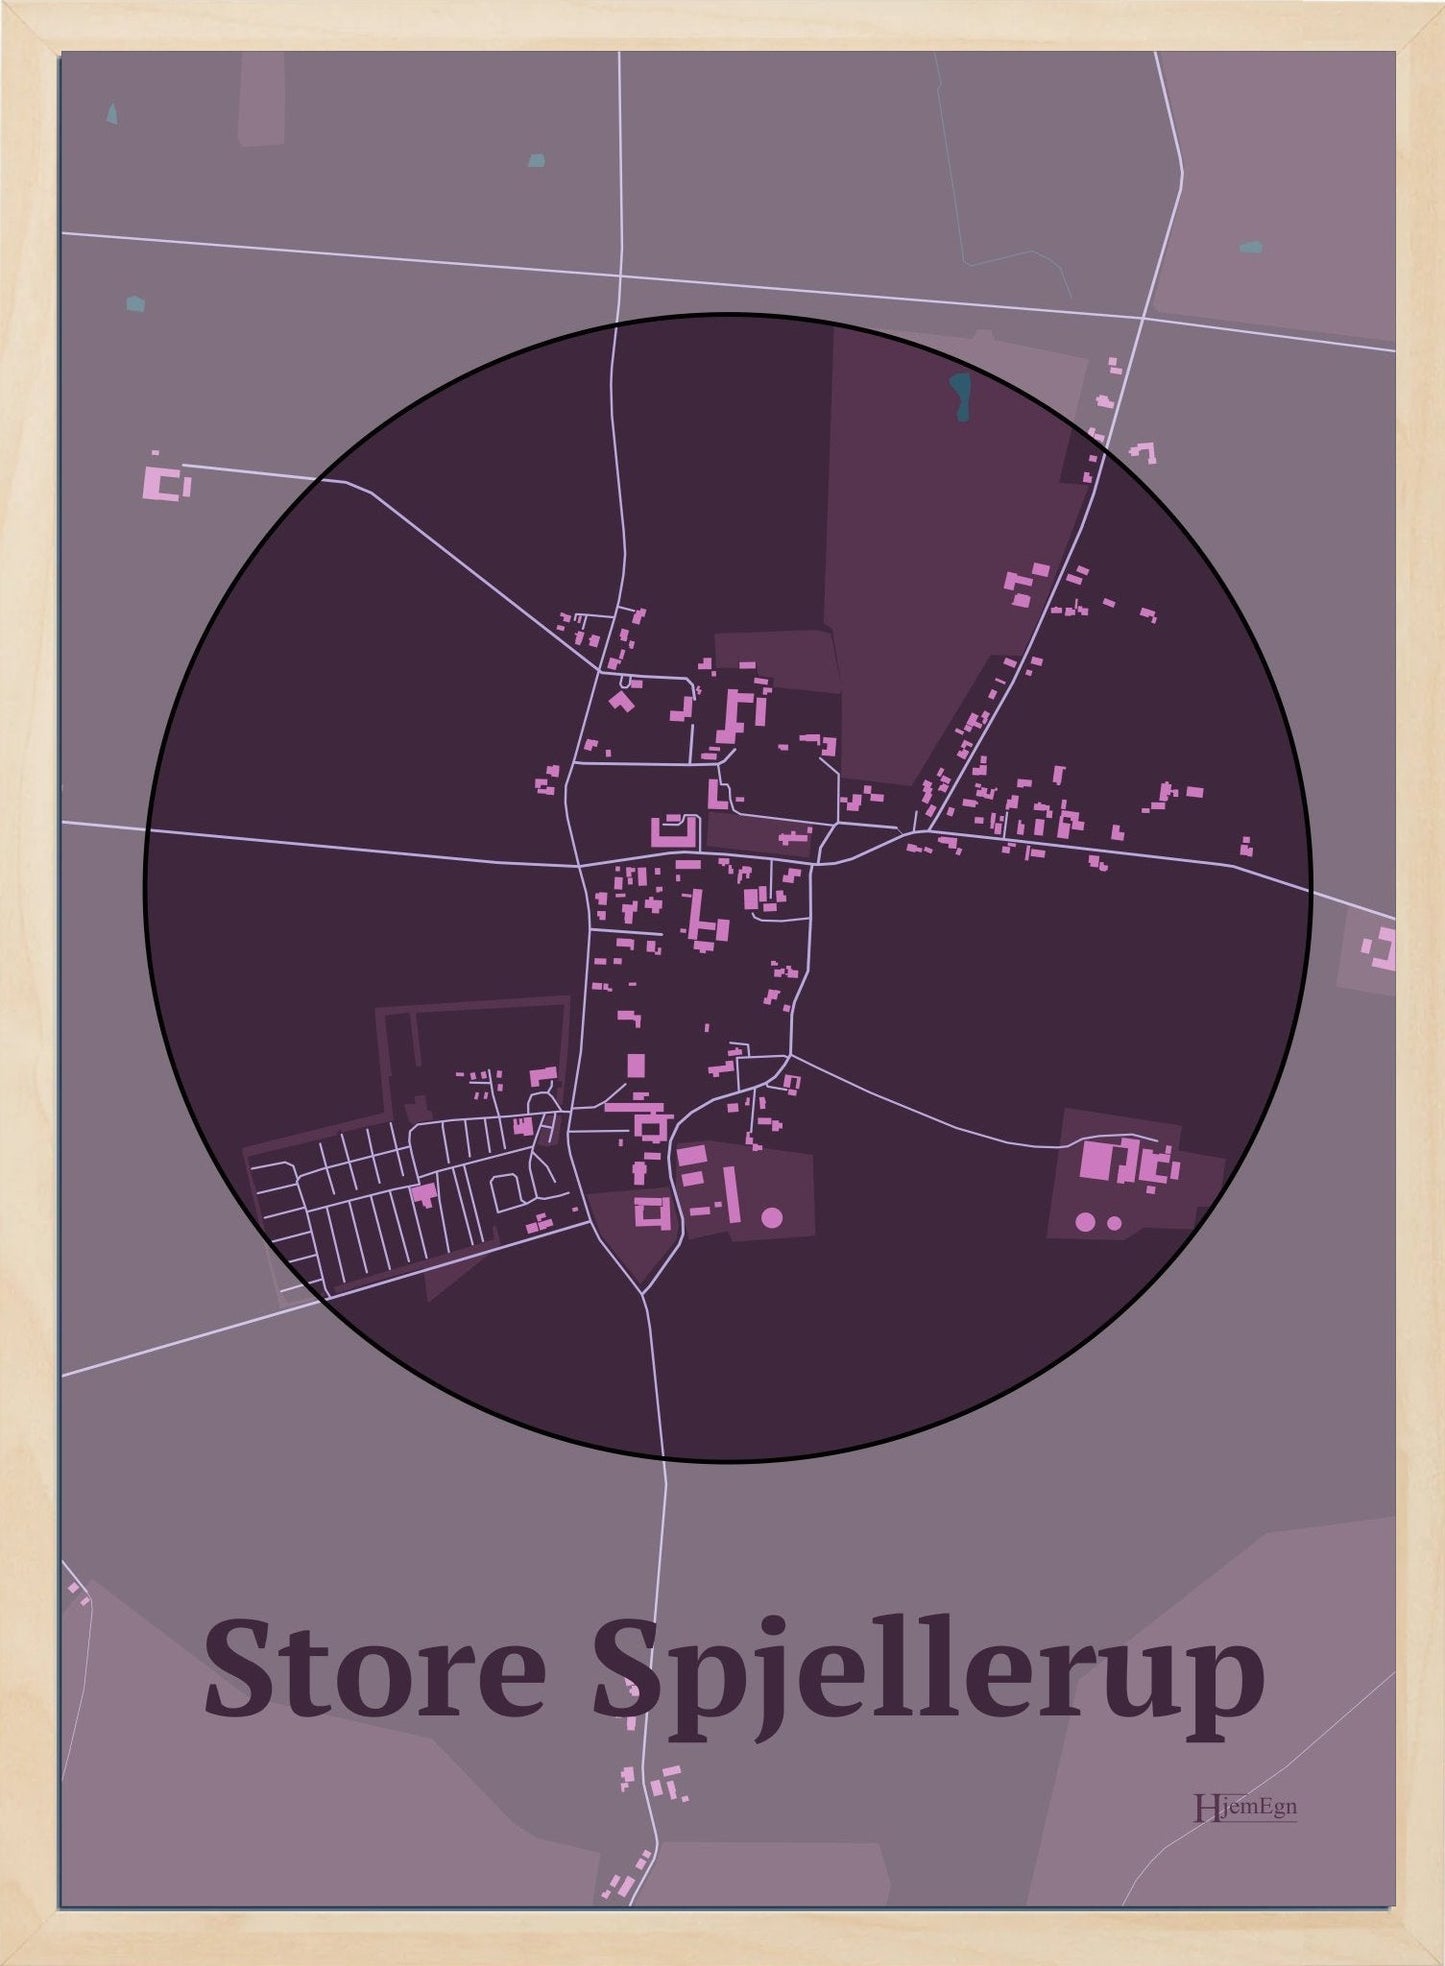 Store Spjellerup plakat i farve mørk rød og HjemEgn.dk design centrum. Design bykort for Store Spjellerup